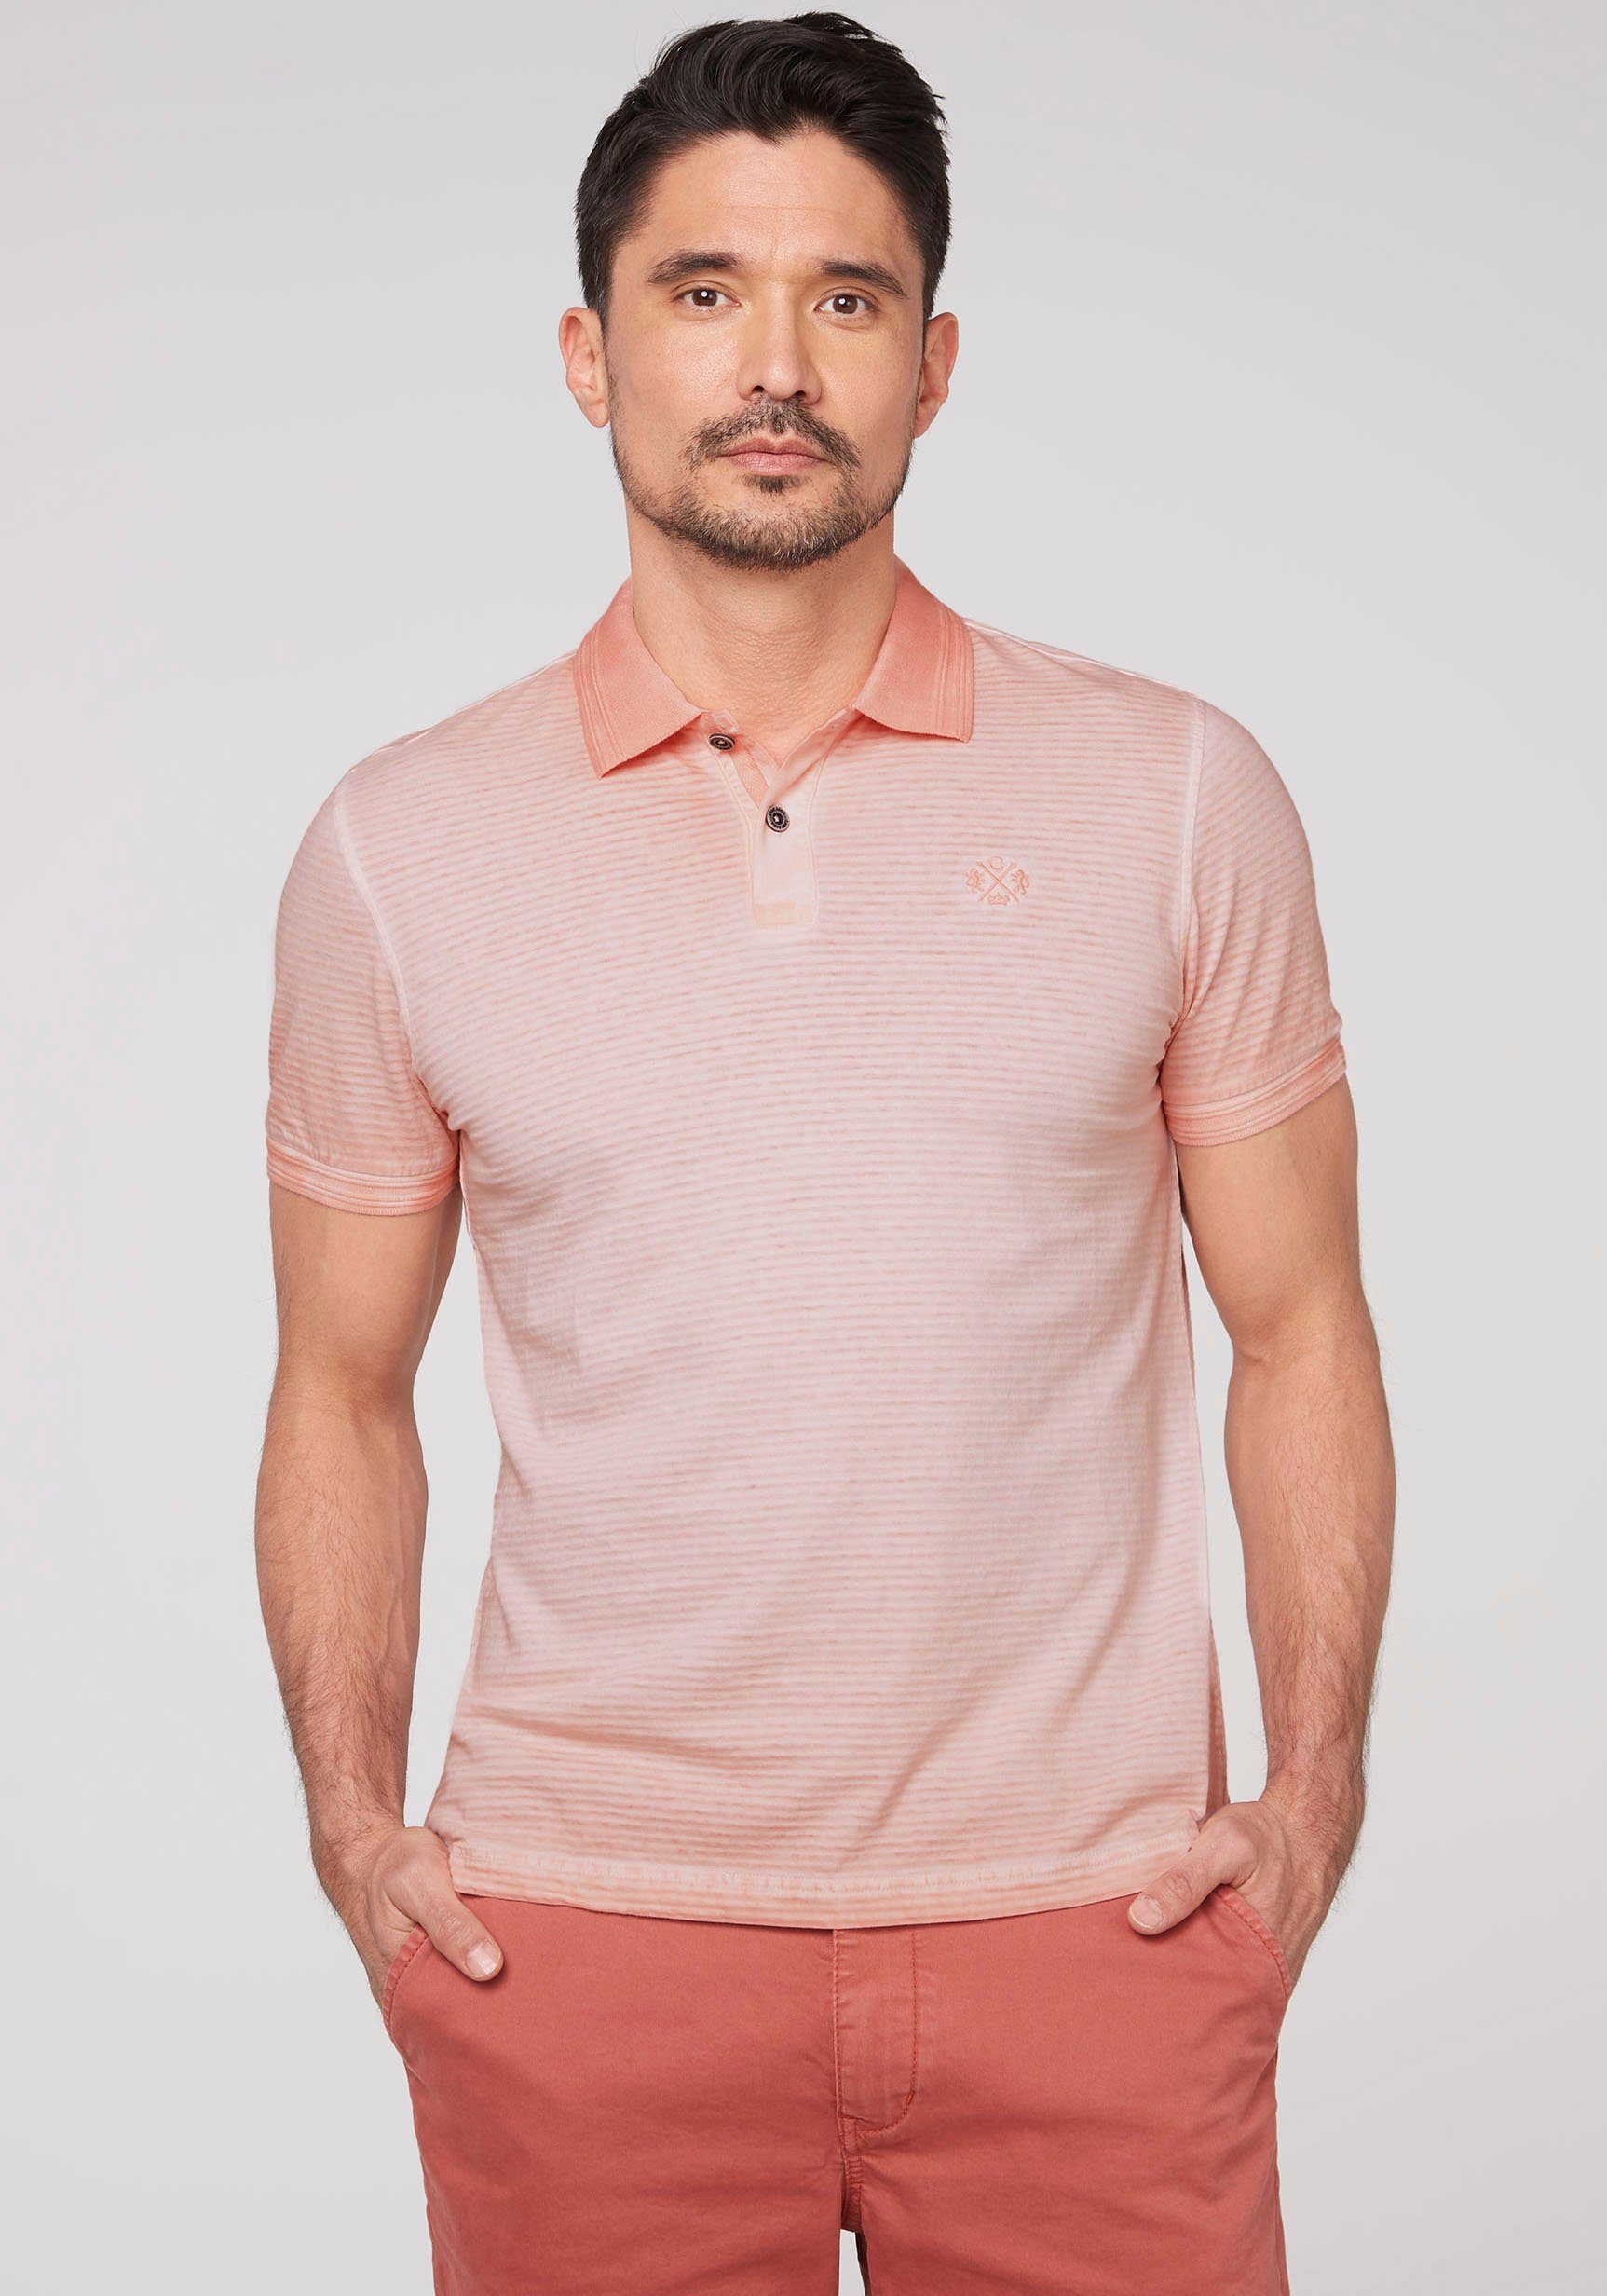 CAMP DAVID Poloshirt mit Farbverlauf online kaufen | OTTO